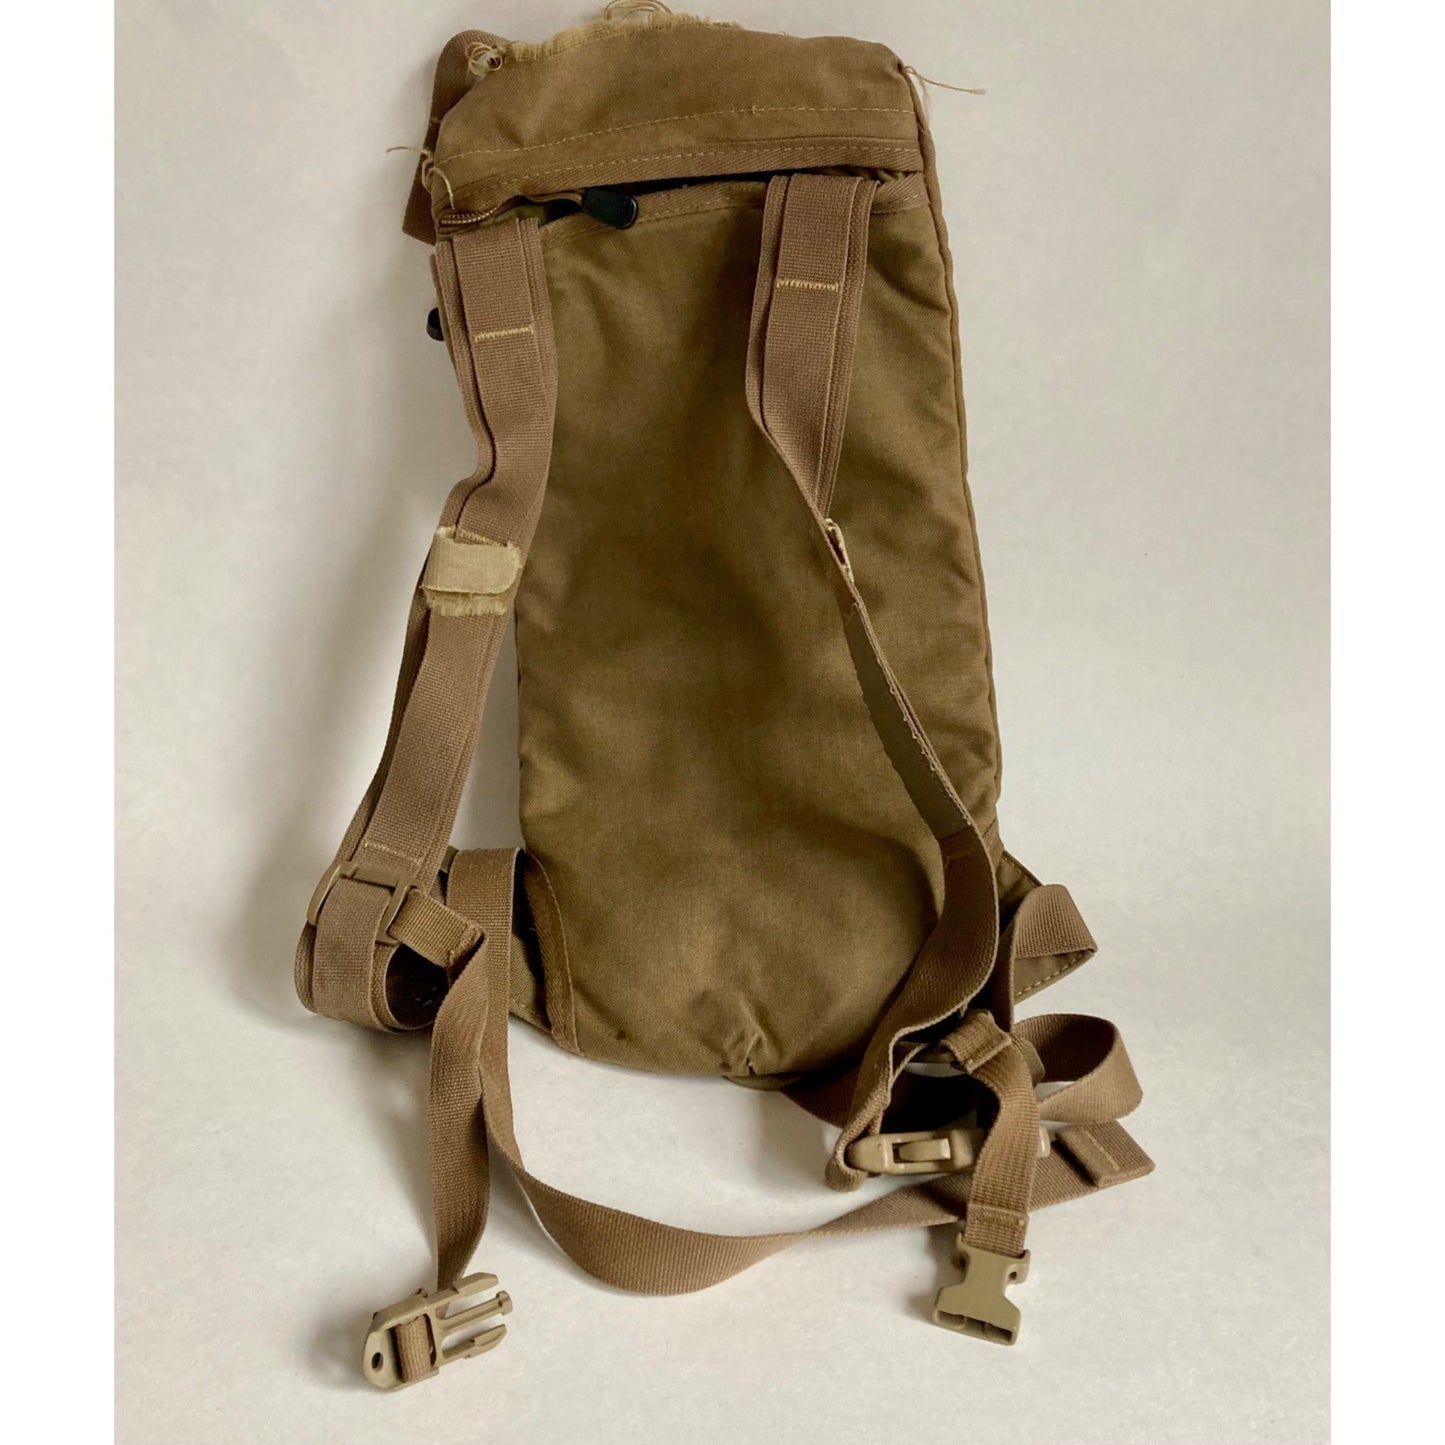 USGI Hydration Carrier Backpack Tan US Military Issue Desert